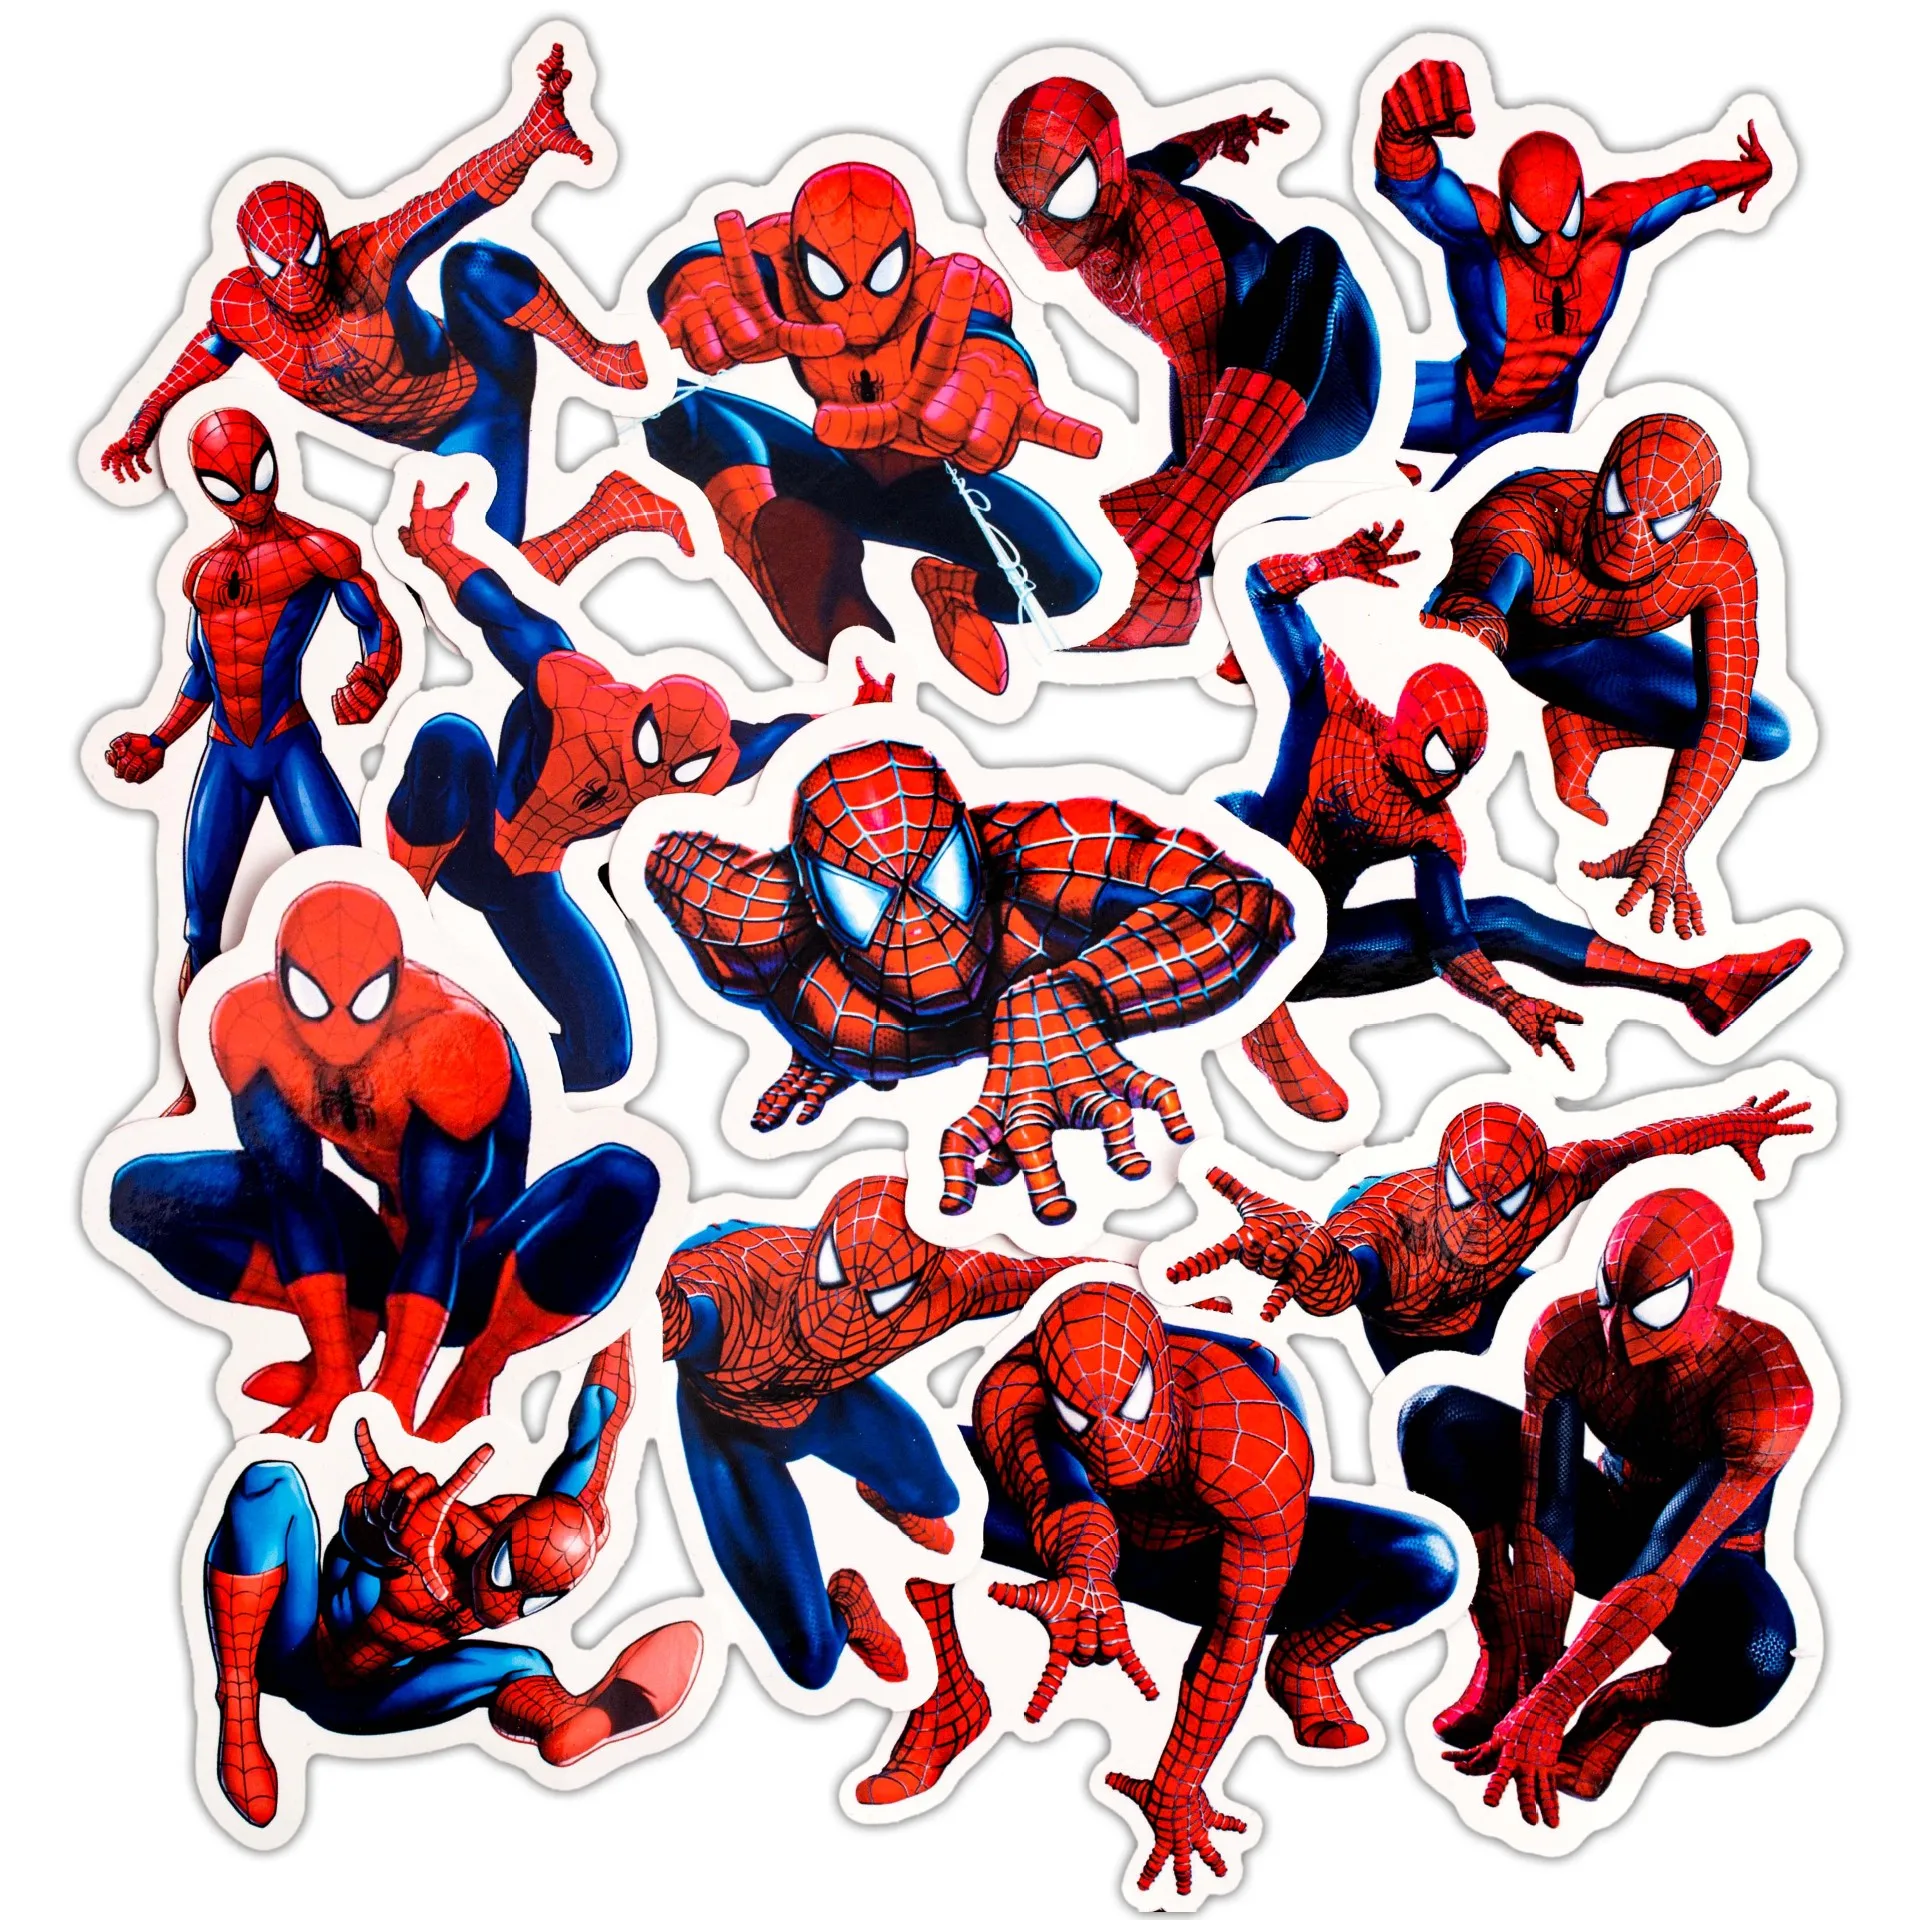 Tanio 32 sztuk Disney Spiderman naklejki Cartoon Avengers deskorolka gitara